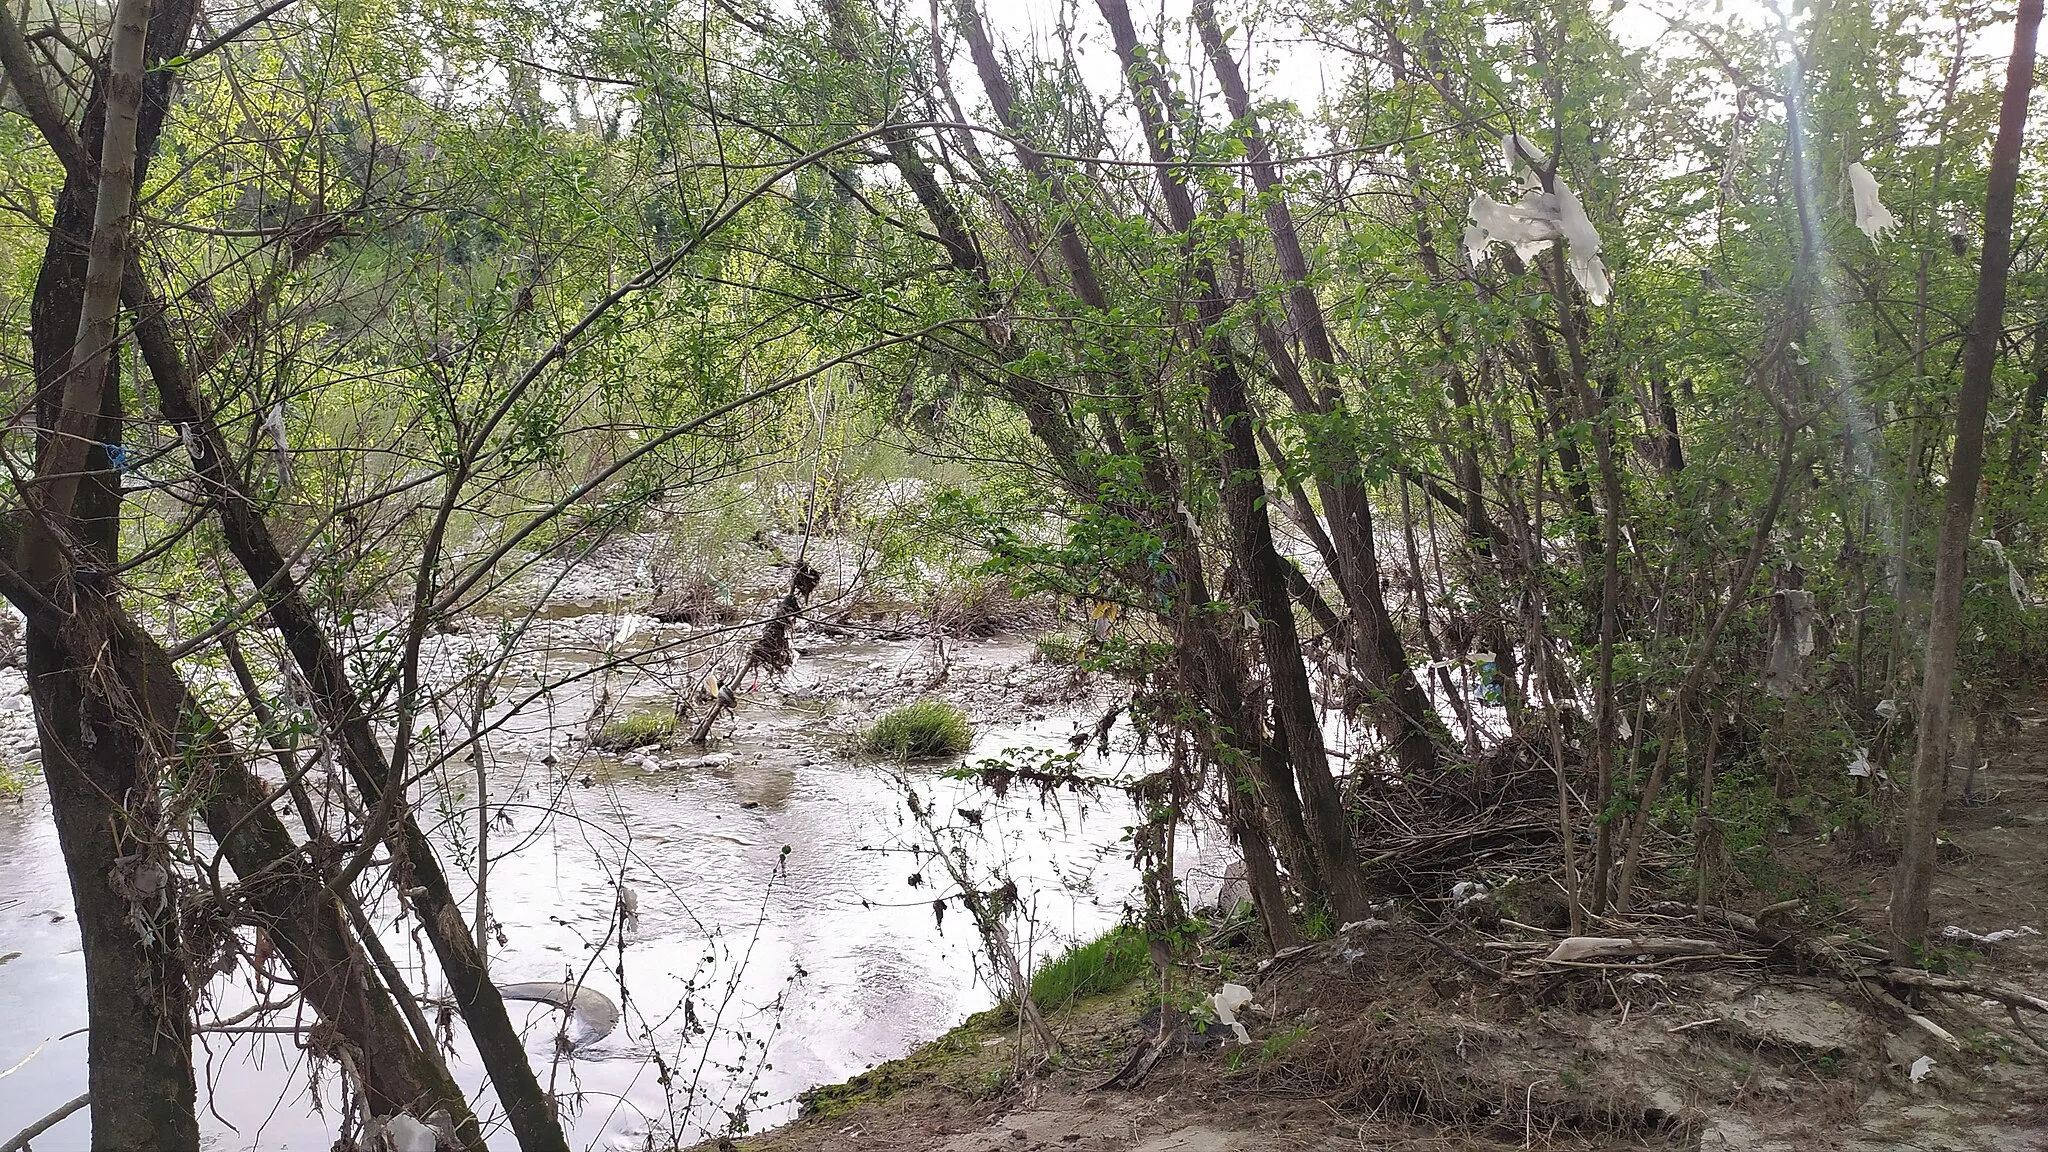 Photo showing: Vegetazione riparia e residui di rifiuti sulla sponda destra del fiume Calore, all'interno dell'oasi Zone Umide Beneventane nel comune di Benevento.